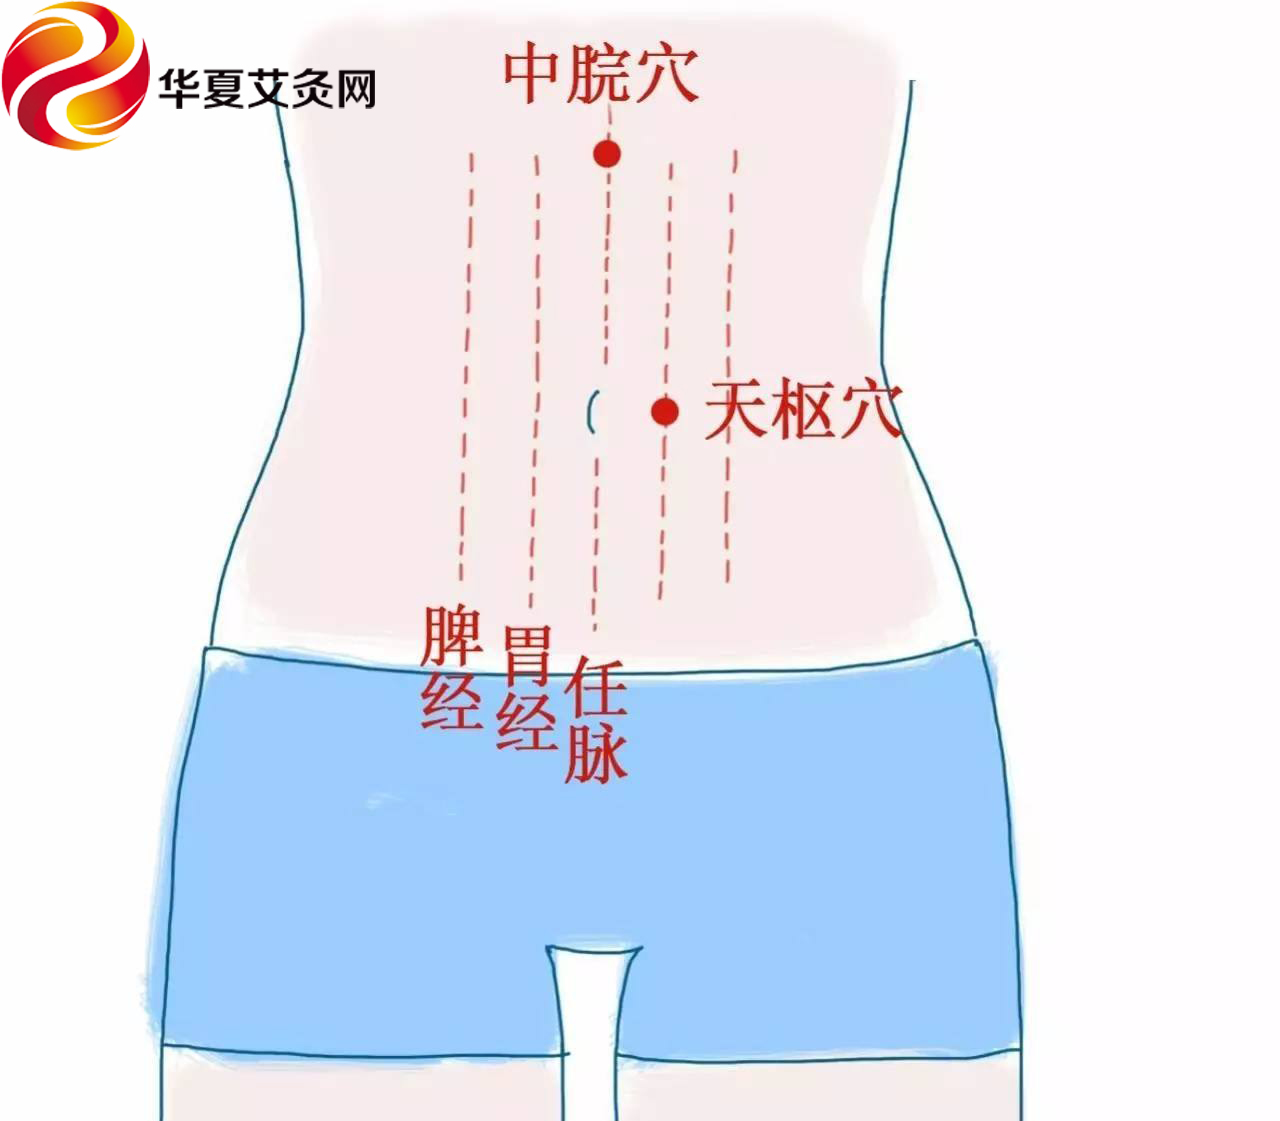 中脘穴的位置在上腹部,此穴在脐上四寸的位置